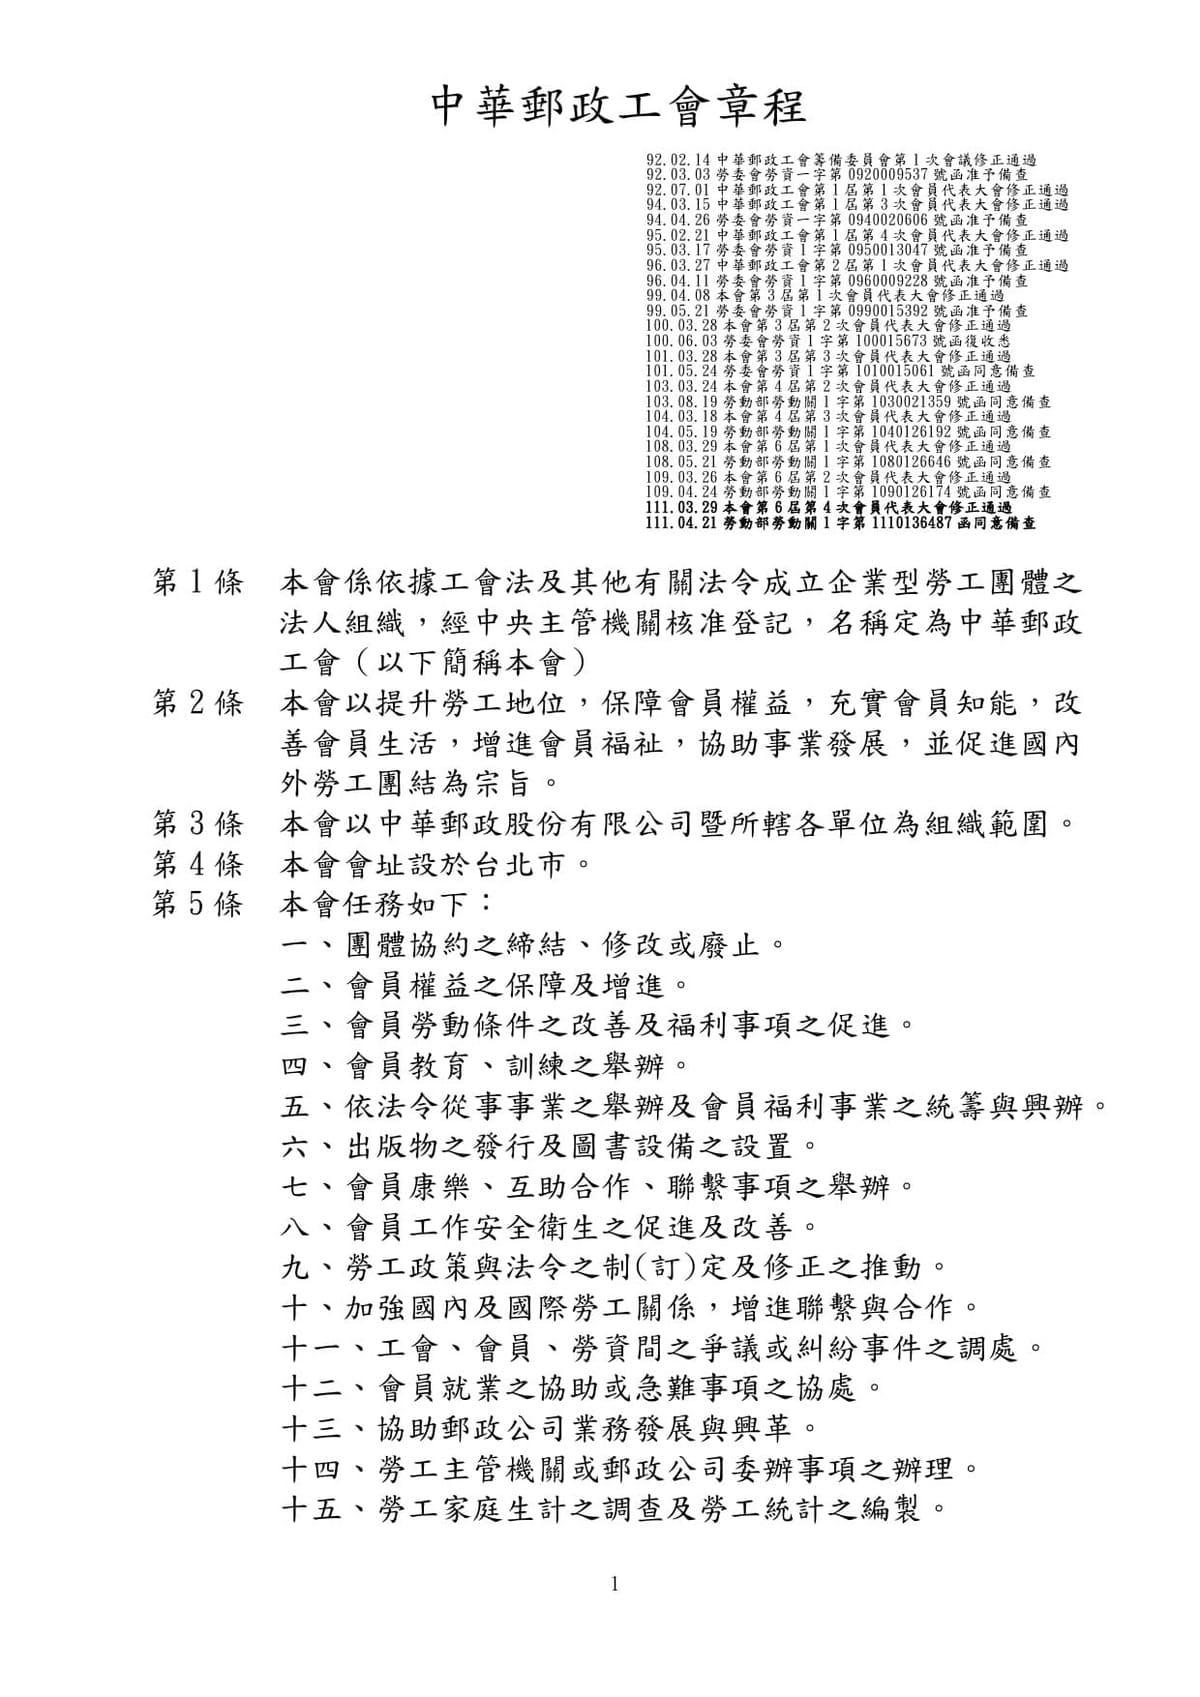 中華郵政工會章程  (111.03.29修正)  